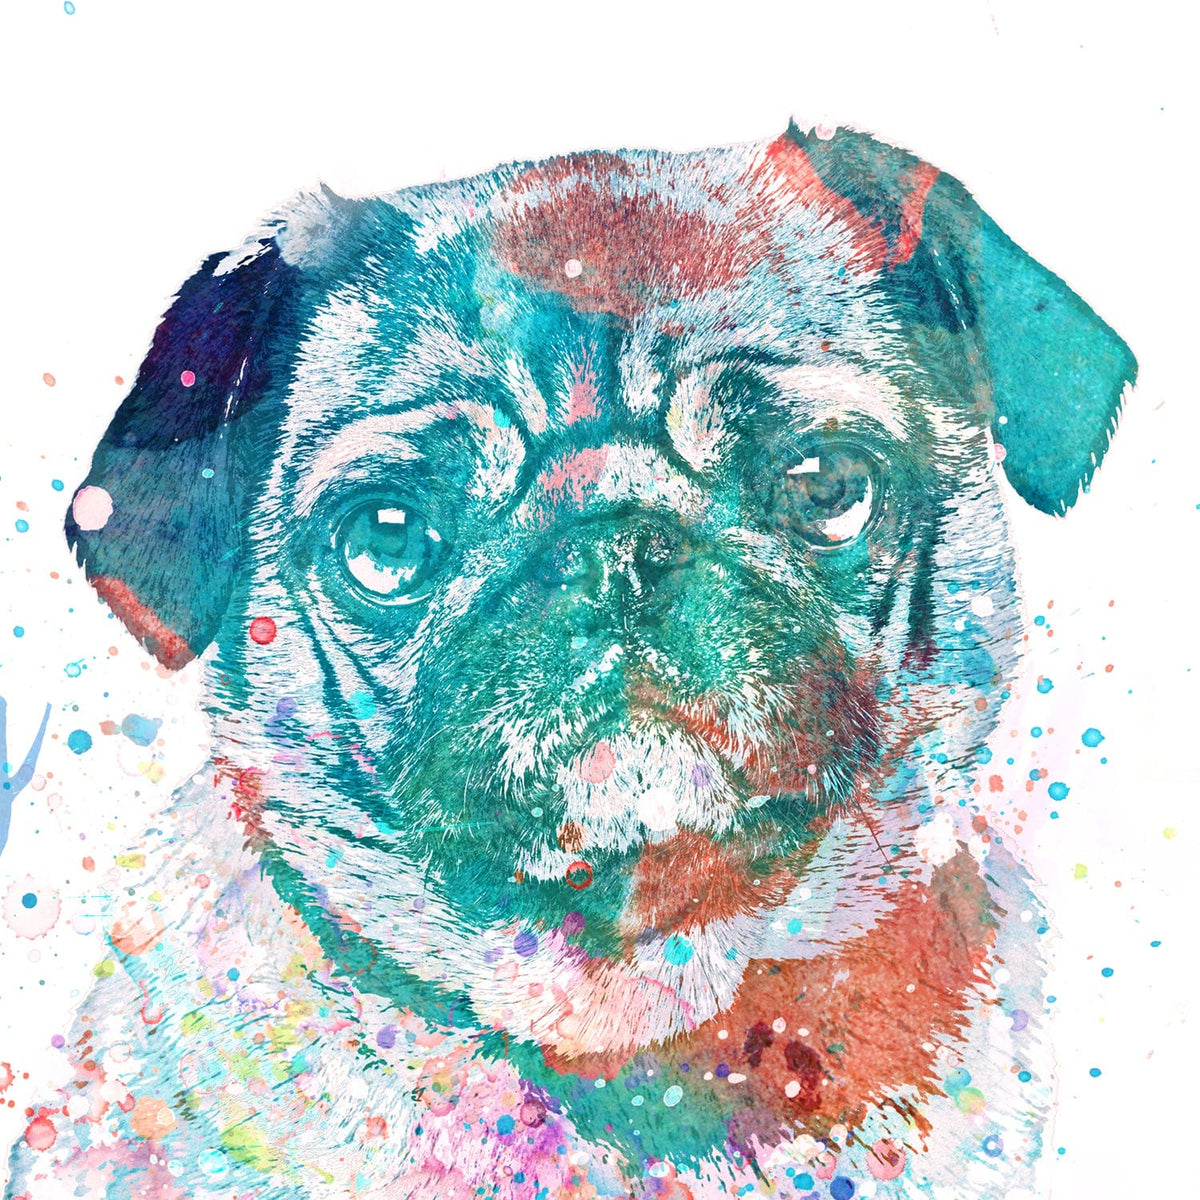 Pug Dog Pet Art - Detail of watercolor